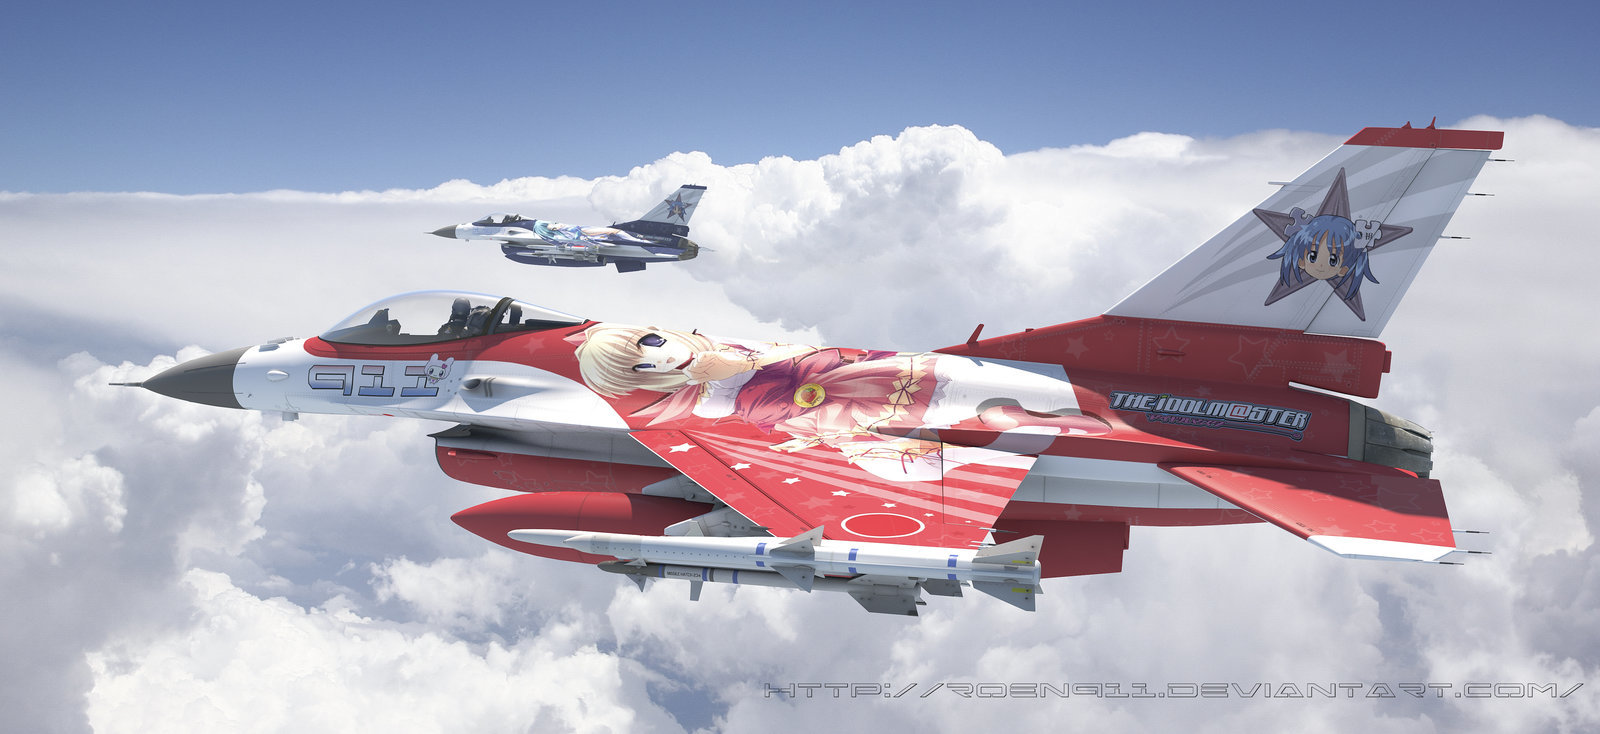 Fine Art: Hot Warplane Art Dump